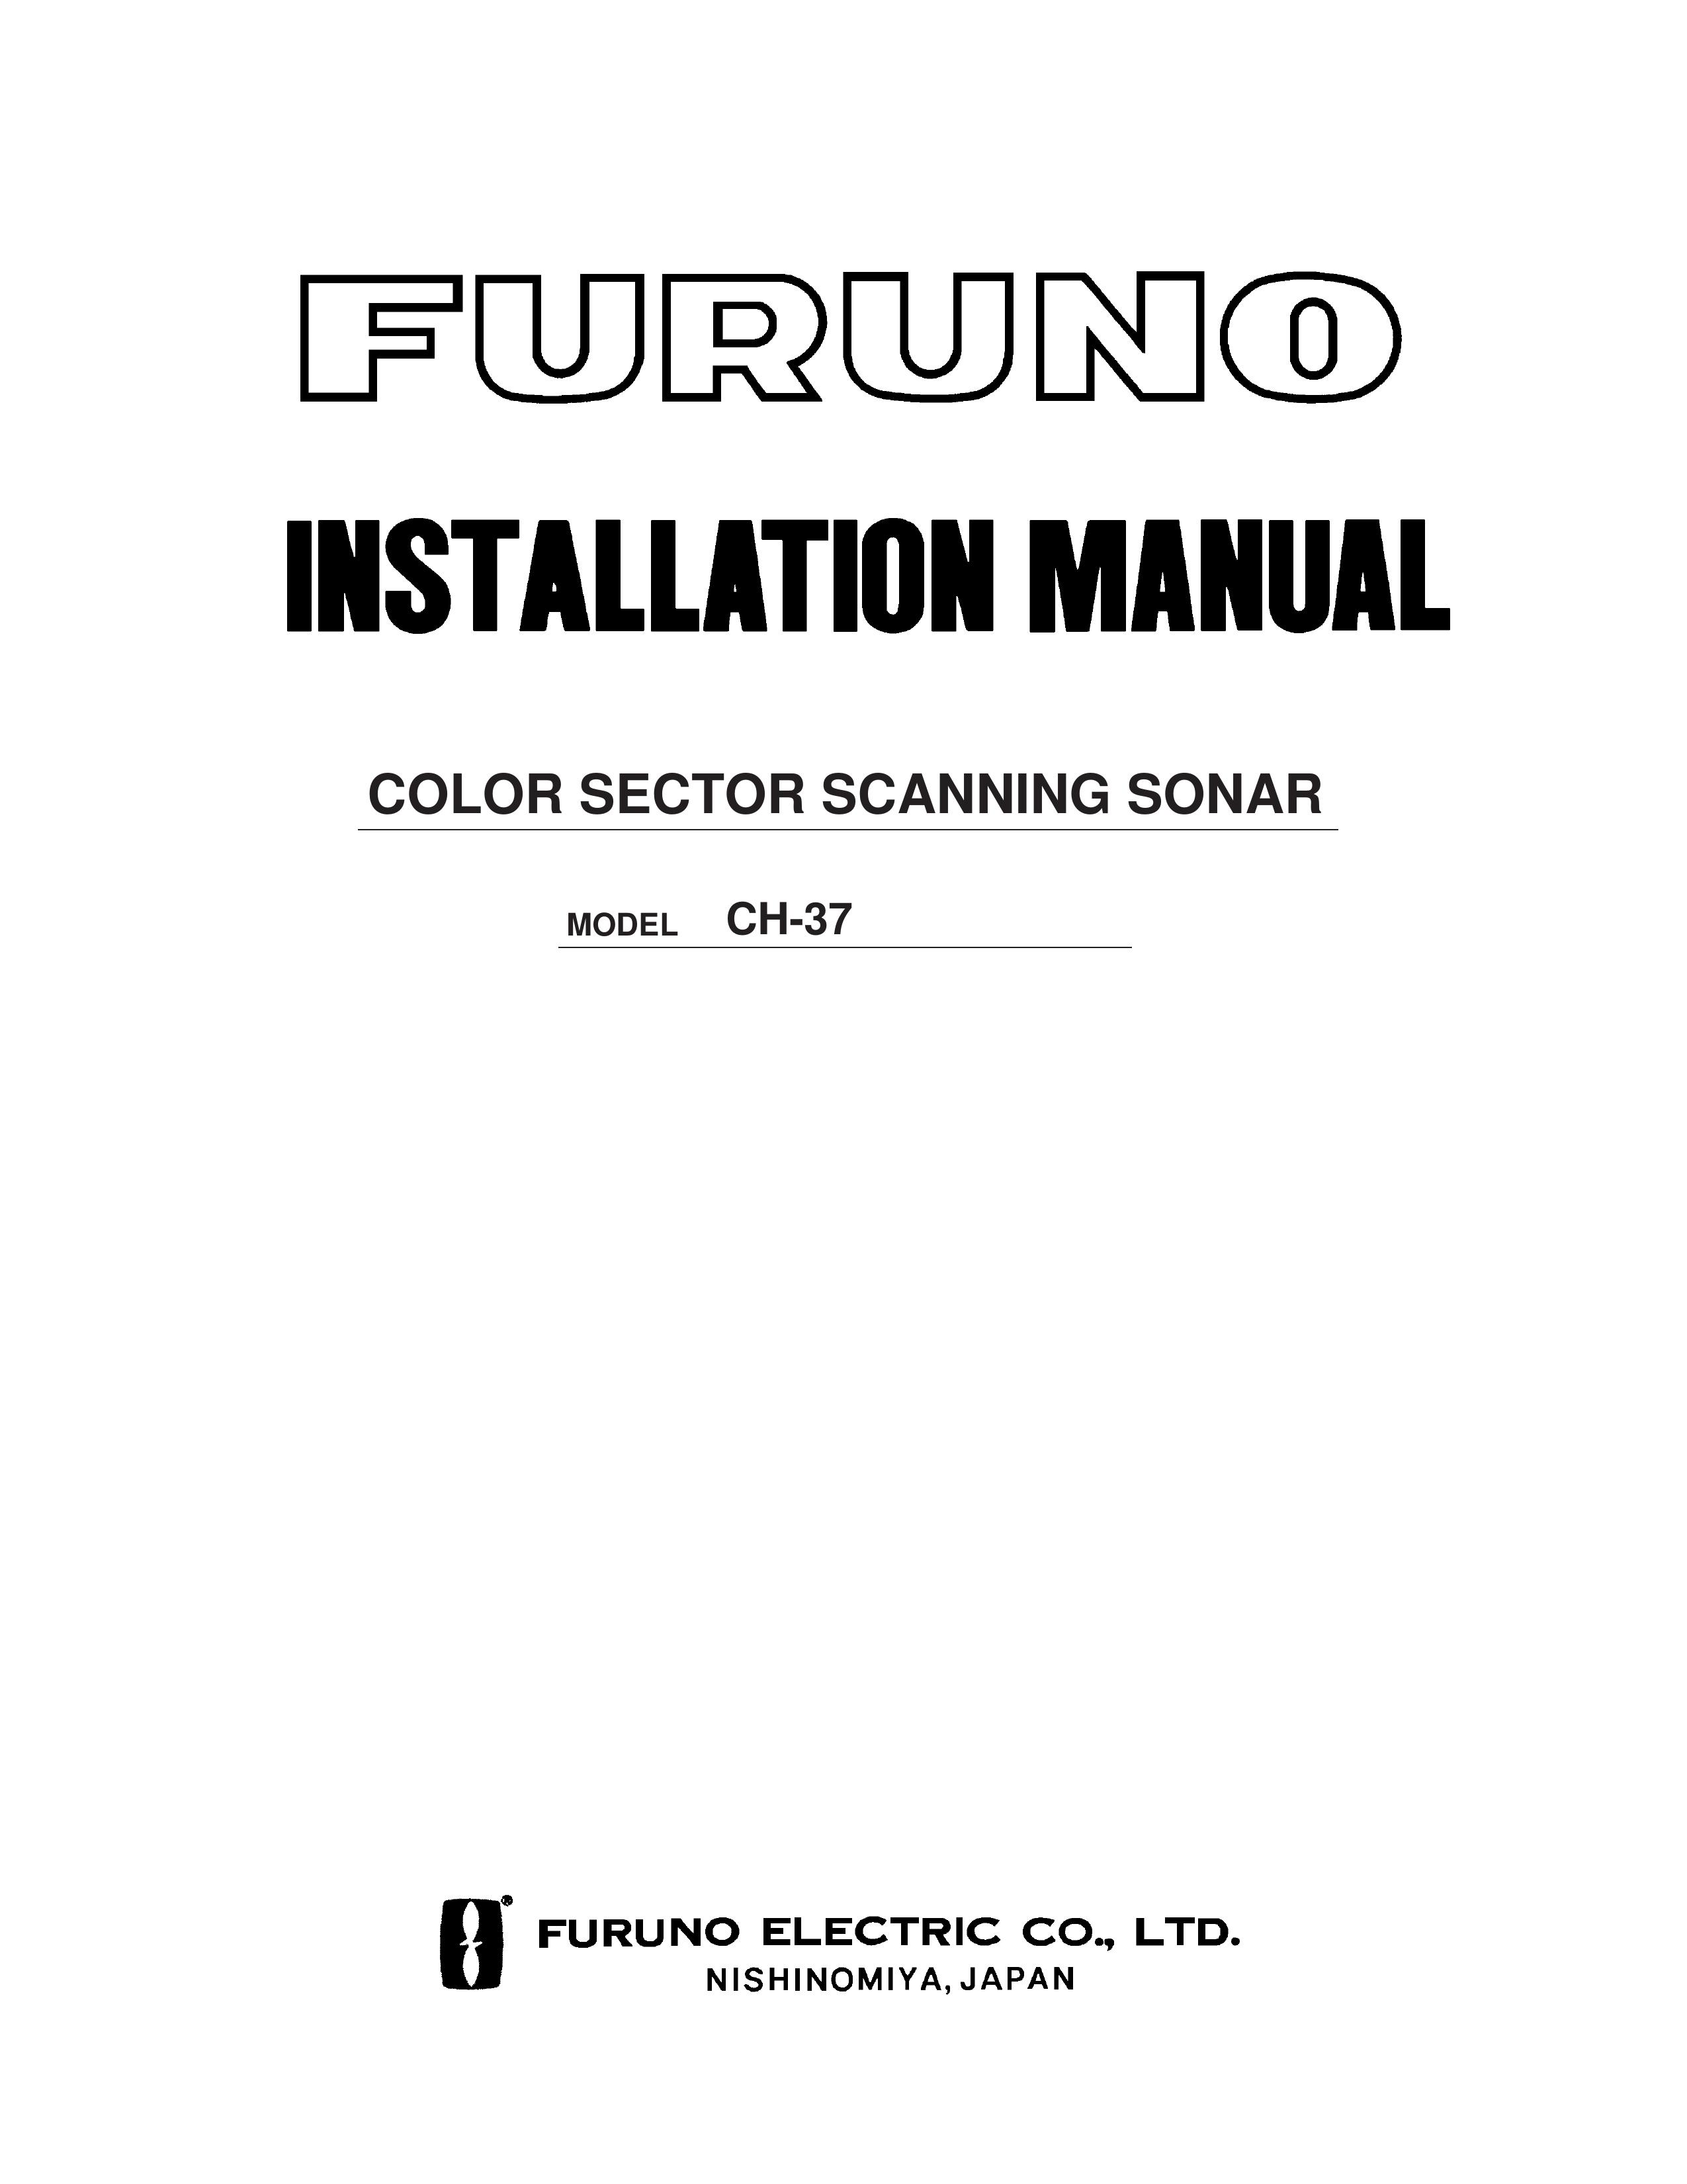 Furuno CH-37 SONAR User Manual